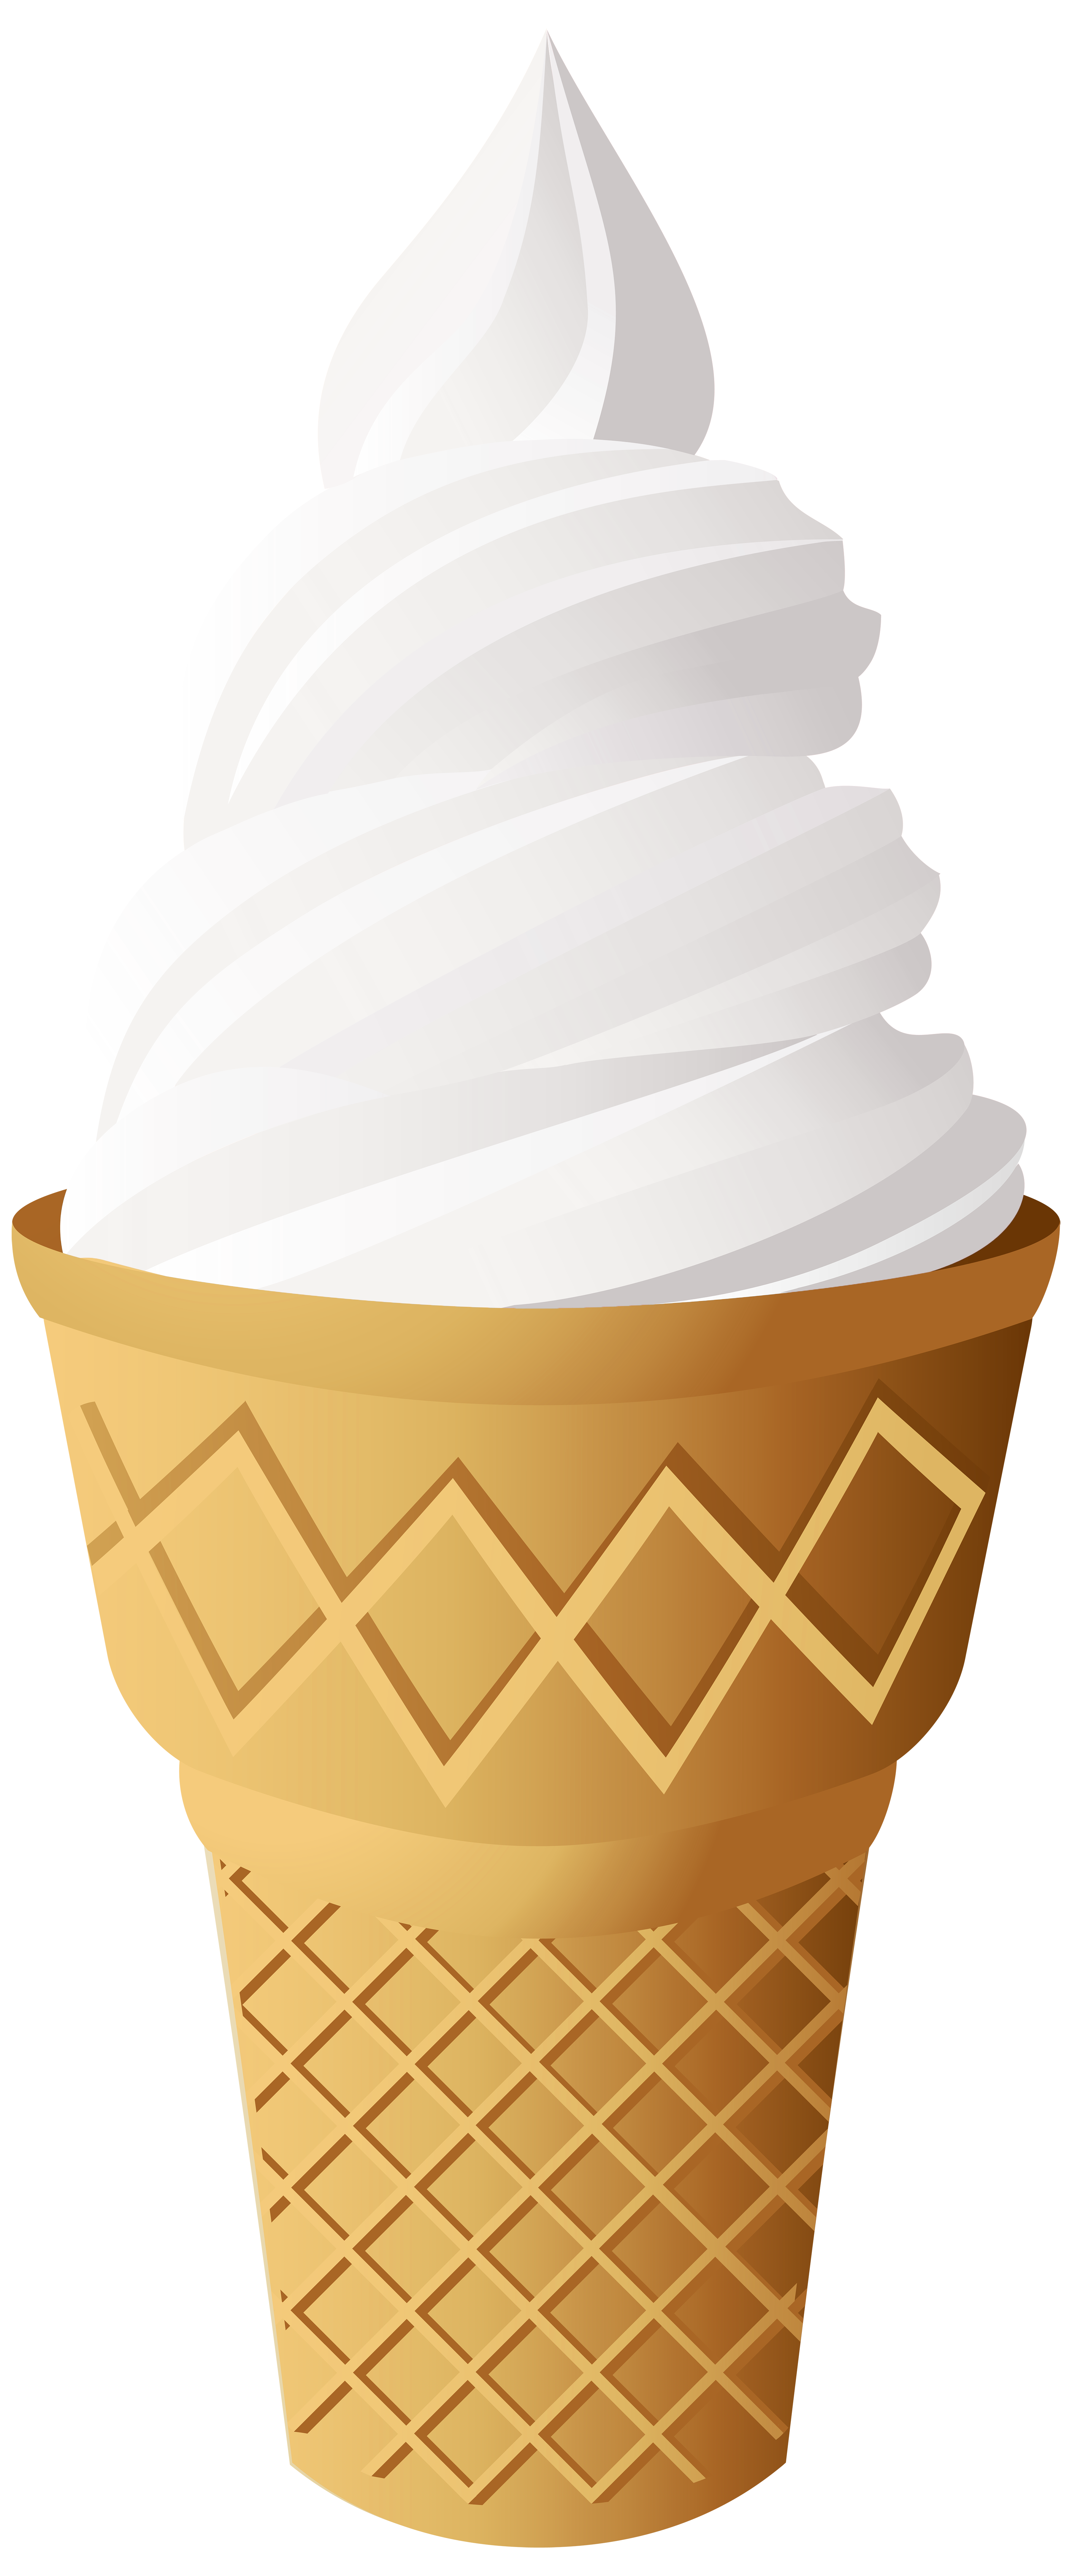 vanilla ice cream cone clipart - photo #3